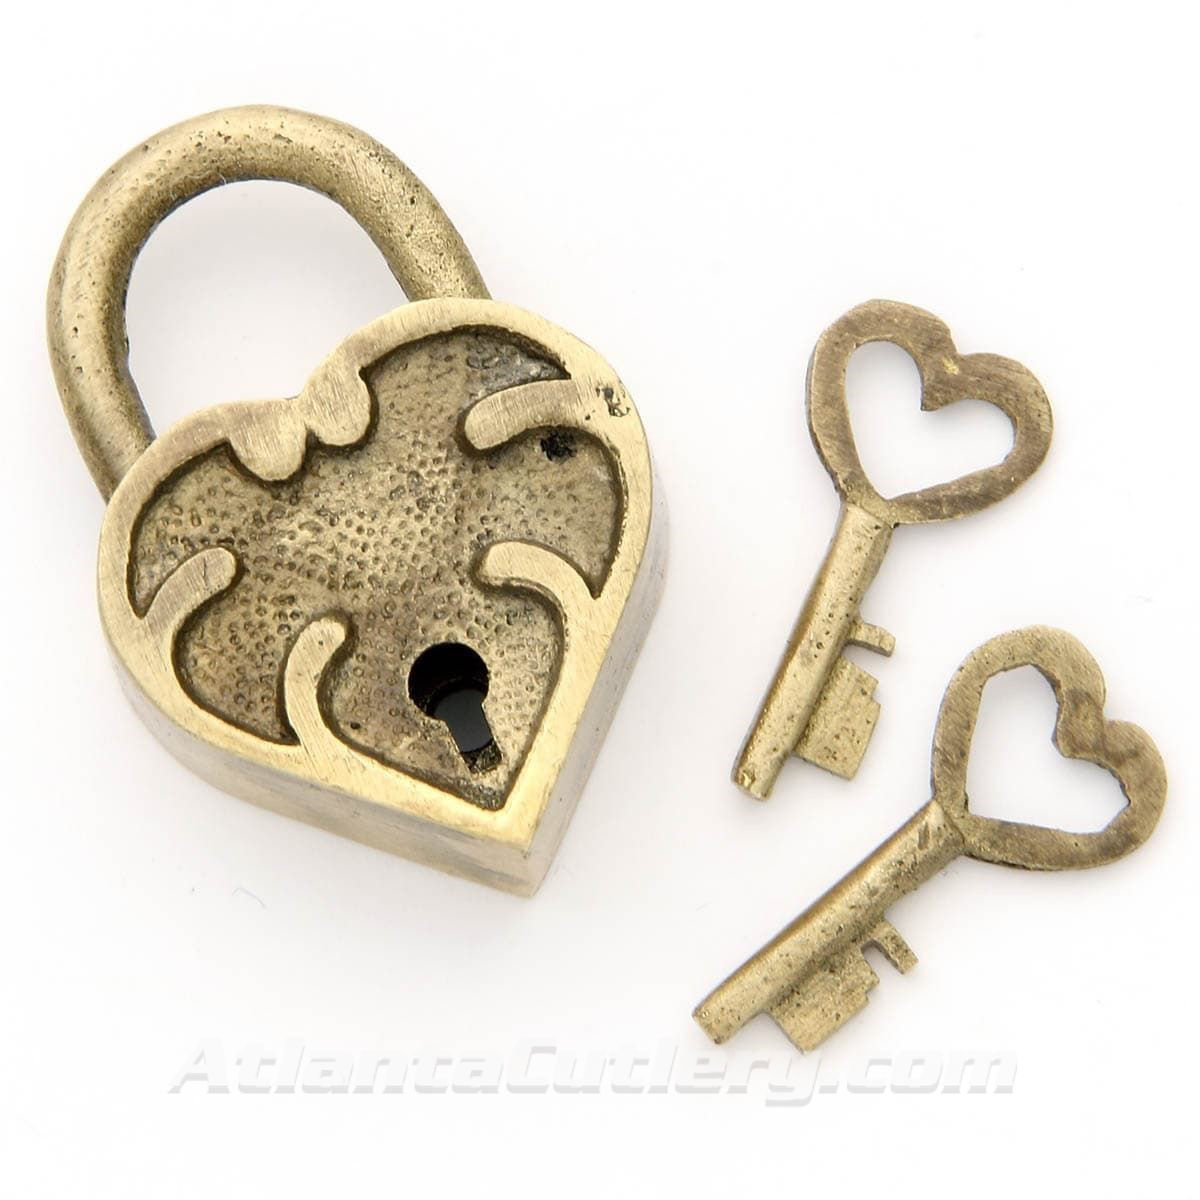 Heart Shaped Brass Lock with Keys